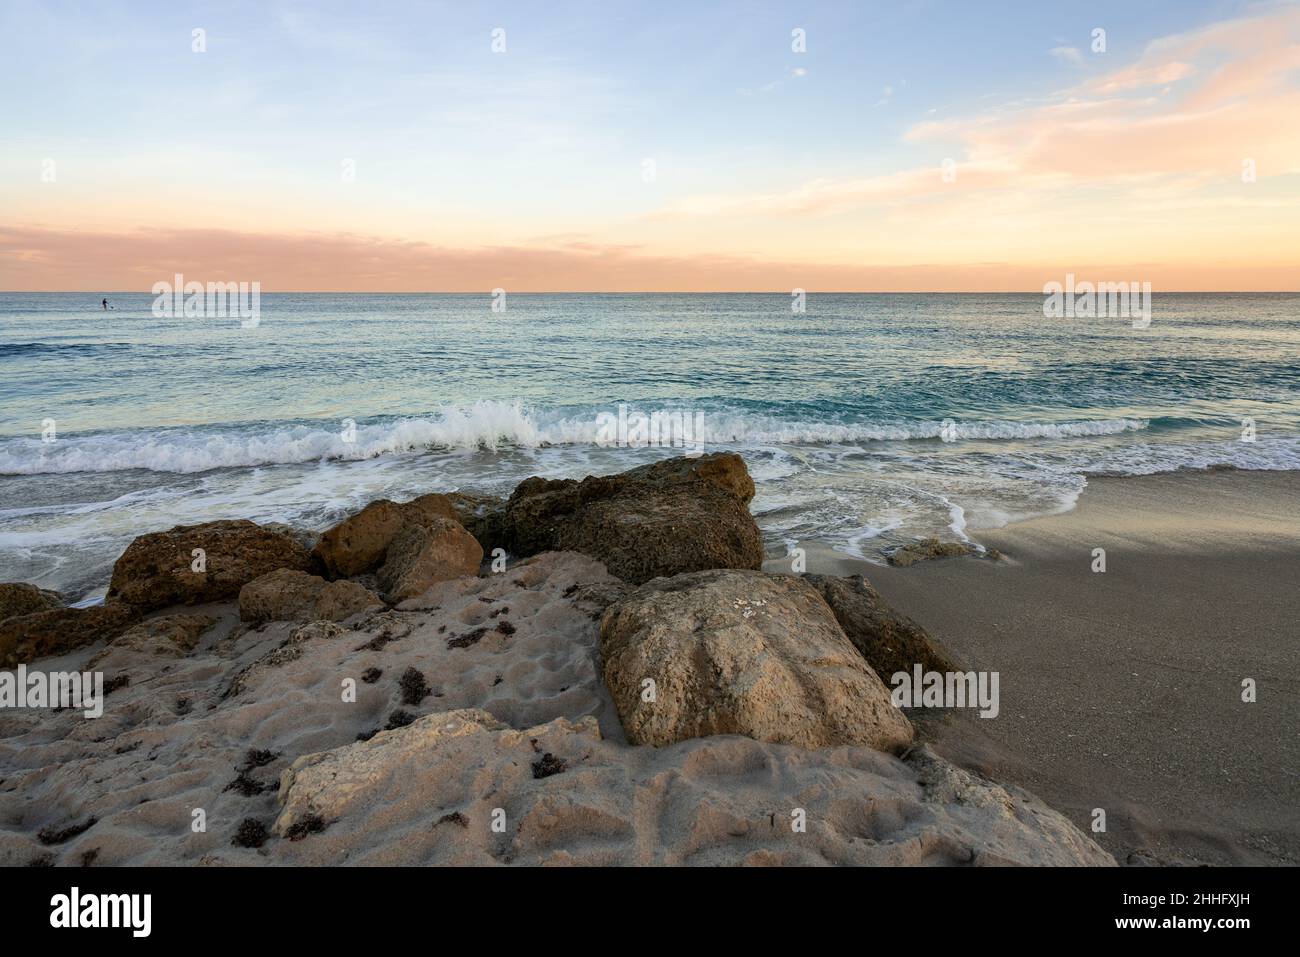 Schönes Bild des Sonnenuntergangs in Palm Beach, Florida, USA, aufgenommen im Dezember 2018 Stockfoto